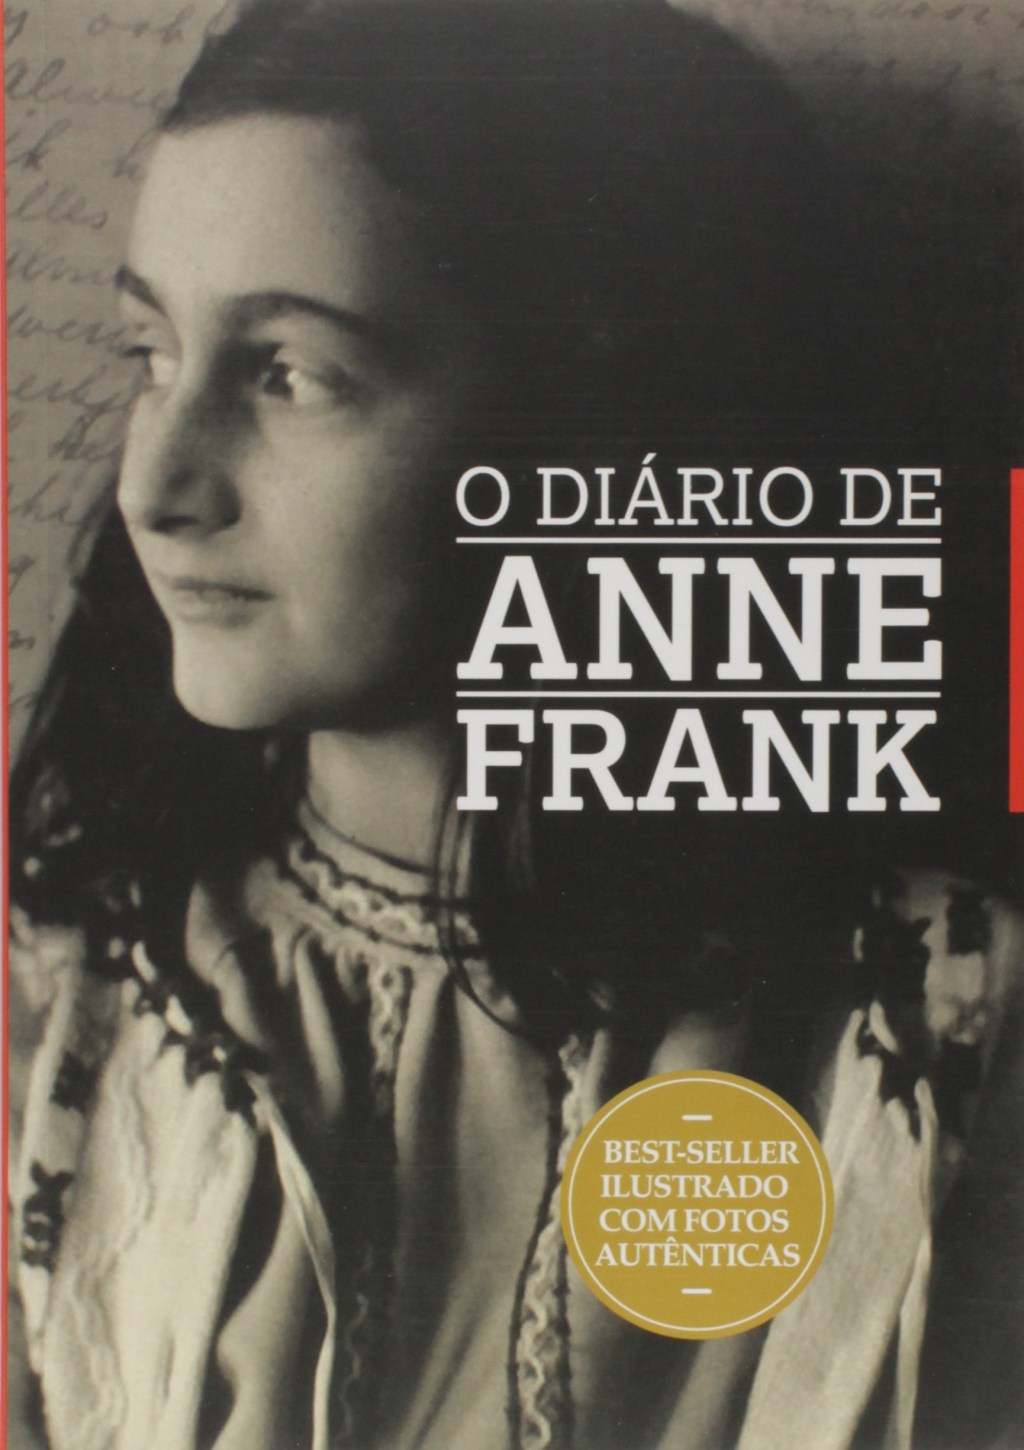 Capa do livro "Diário de Anne Frank"